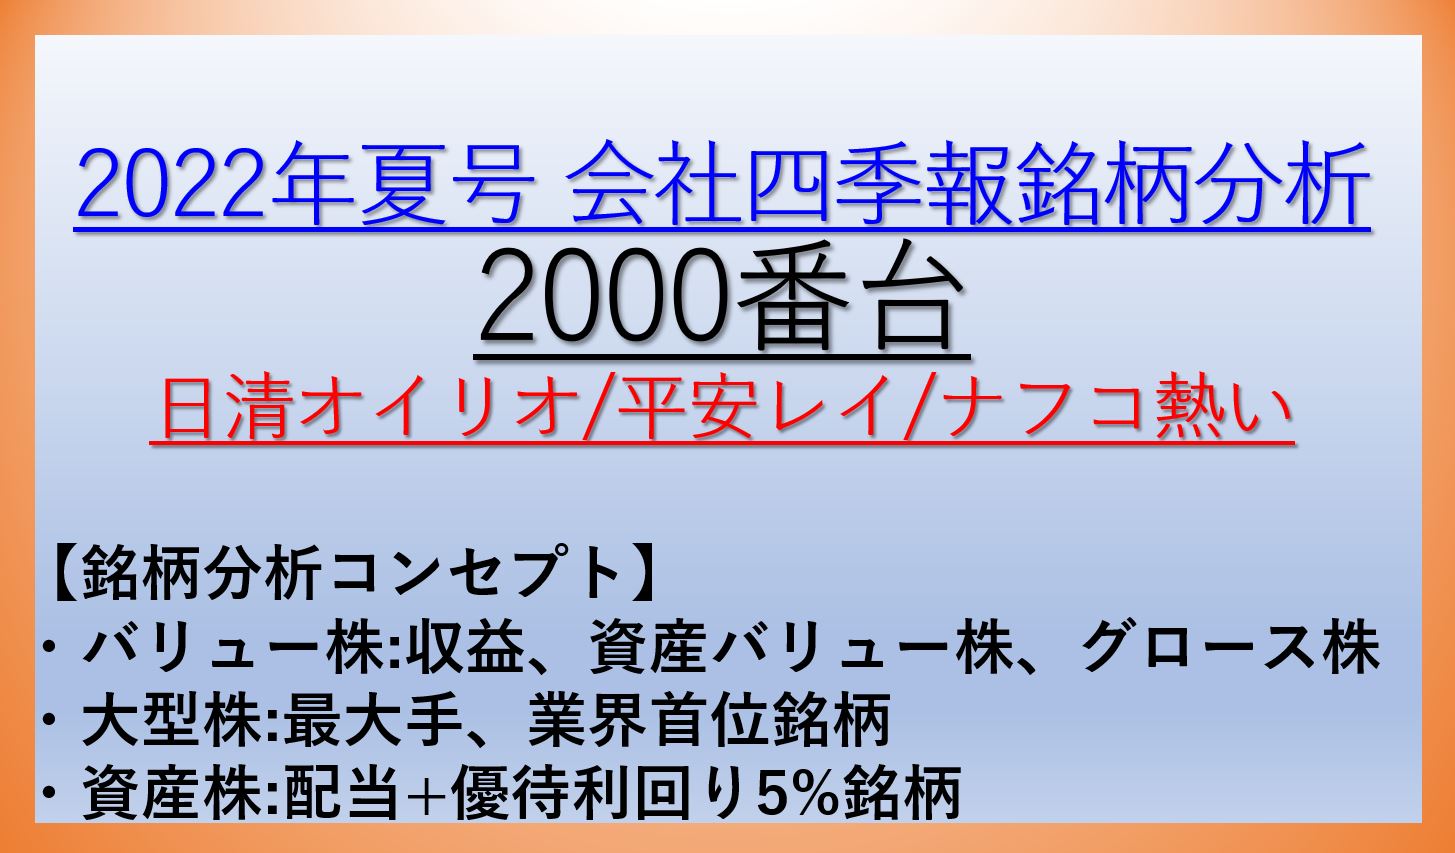 2022年会社四季報夏号銘柄分析-2000番台-バリュー株・資産株・大型株